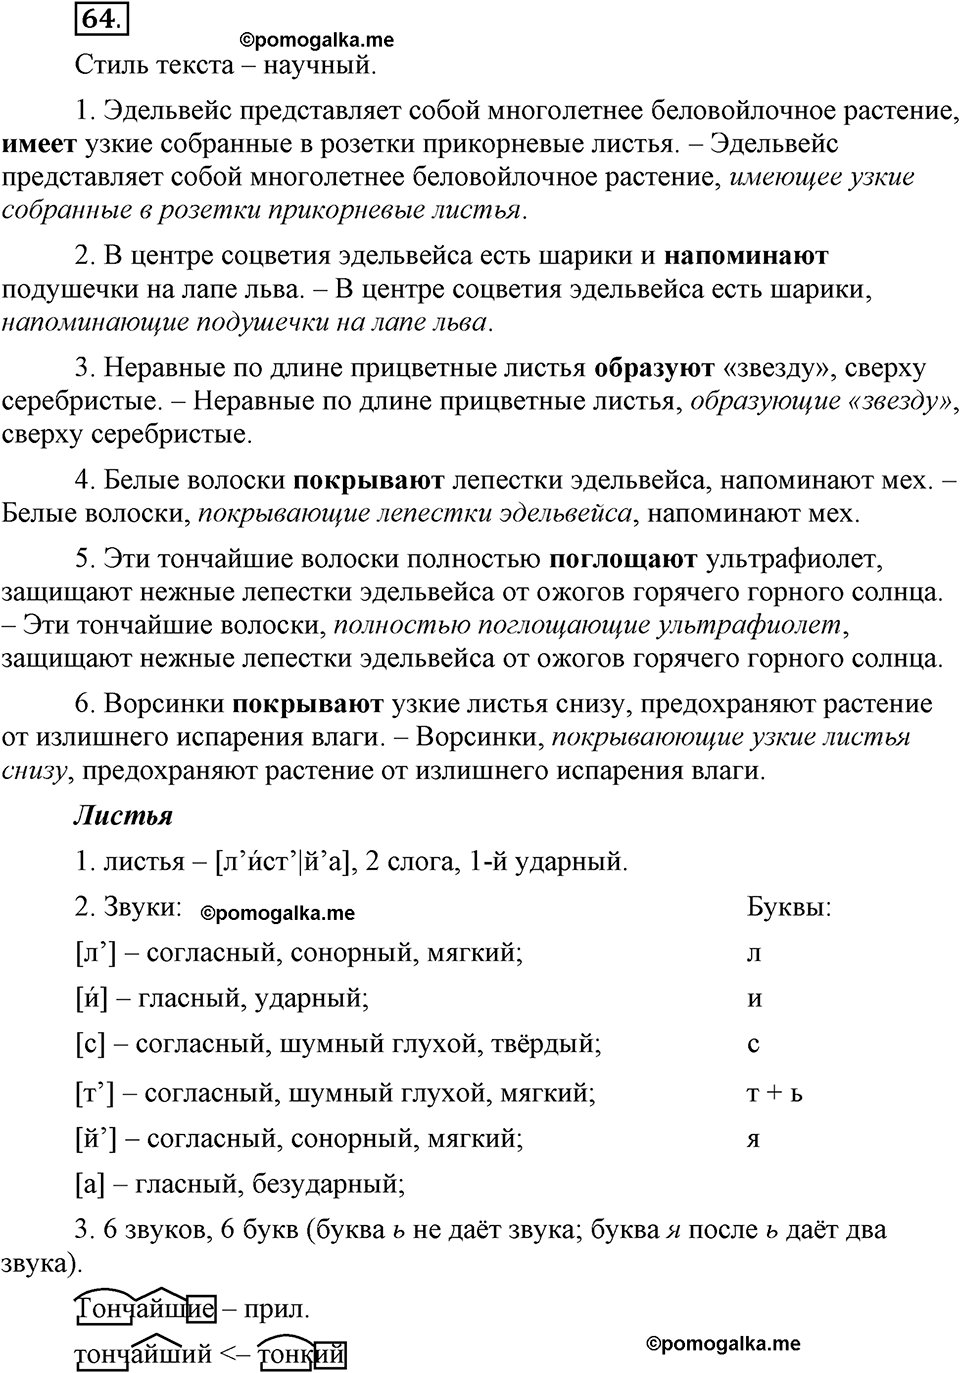 Глава 5. Упражнение №64 русский язык 6 класс Шмелёв